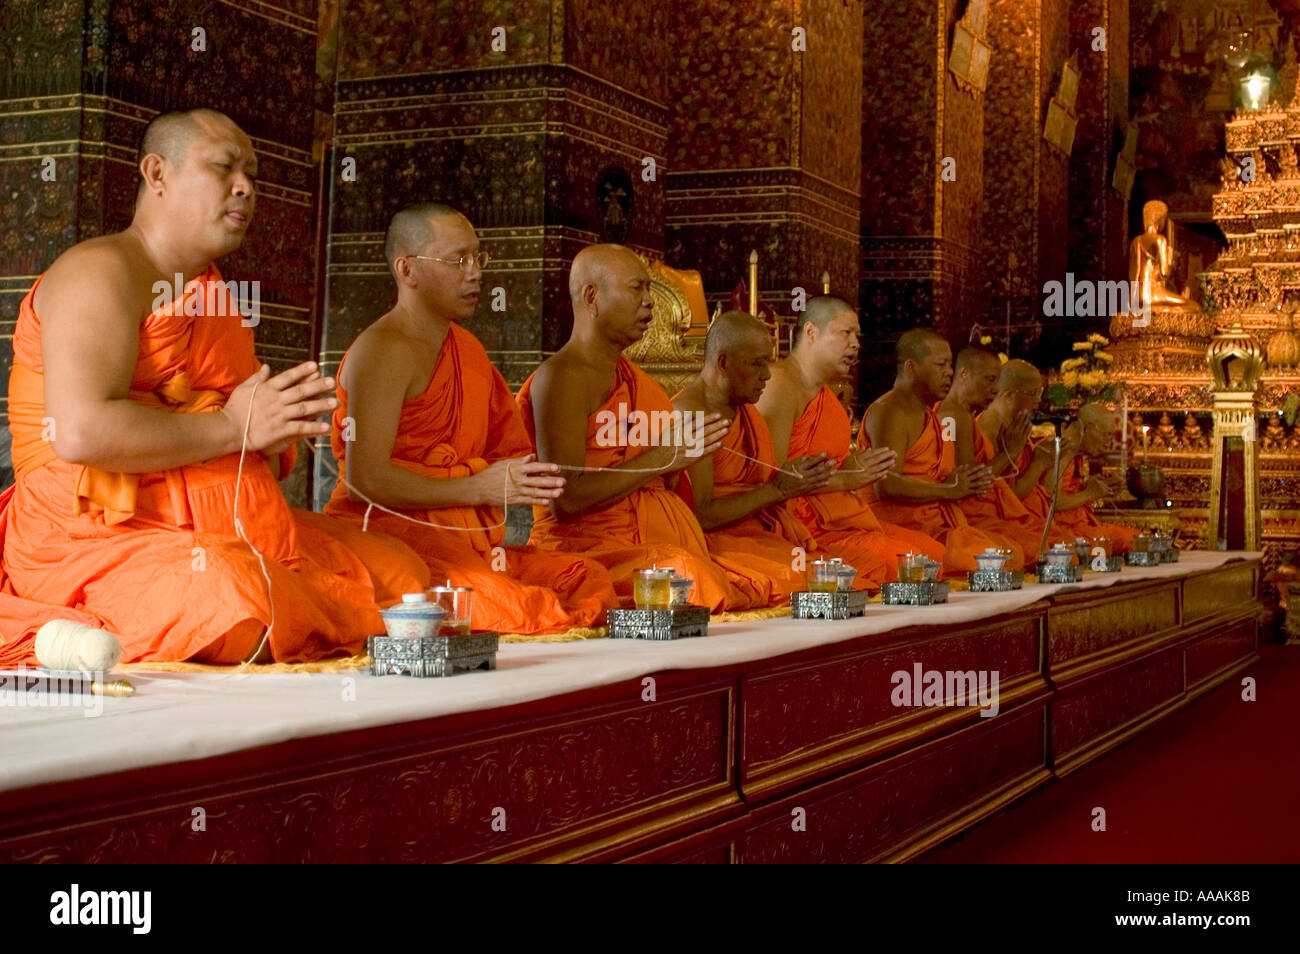 Les moines bouddhistes priant au Grand Palace Bangkok Thailande Asie du sud-est Banque D'Images